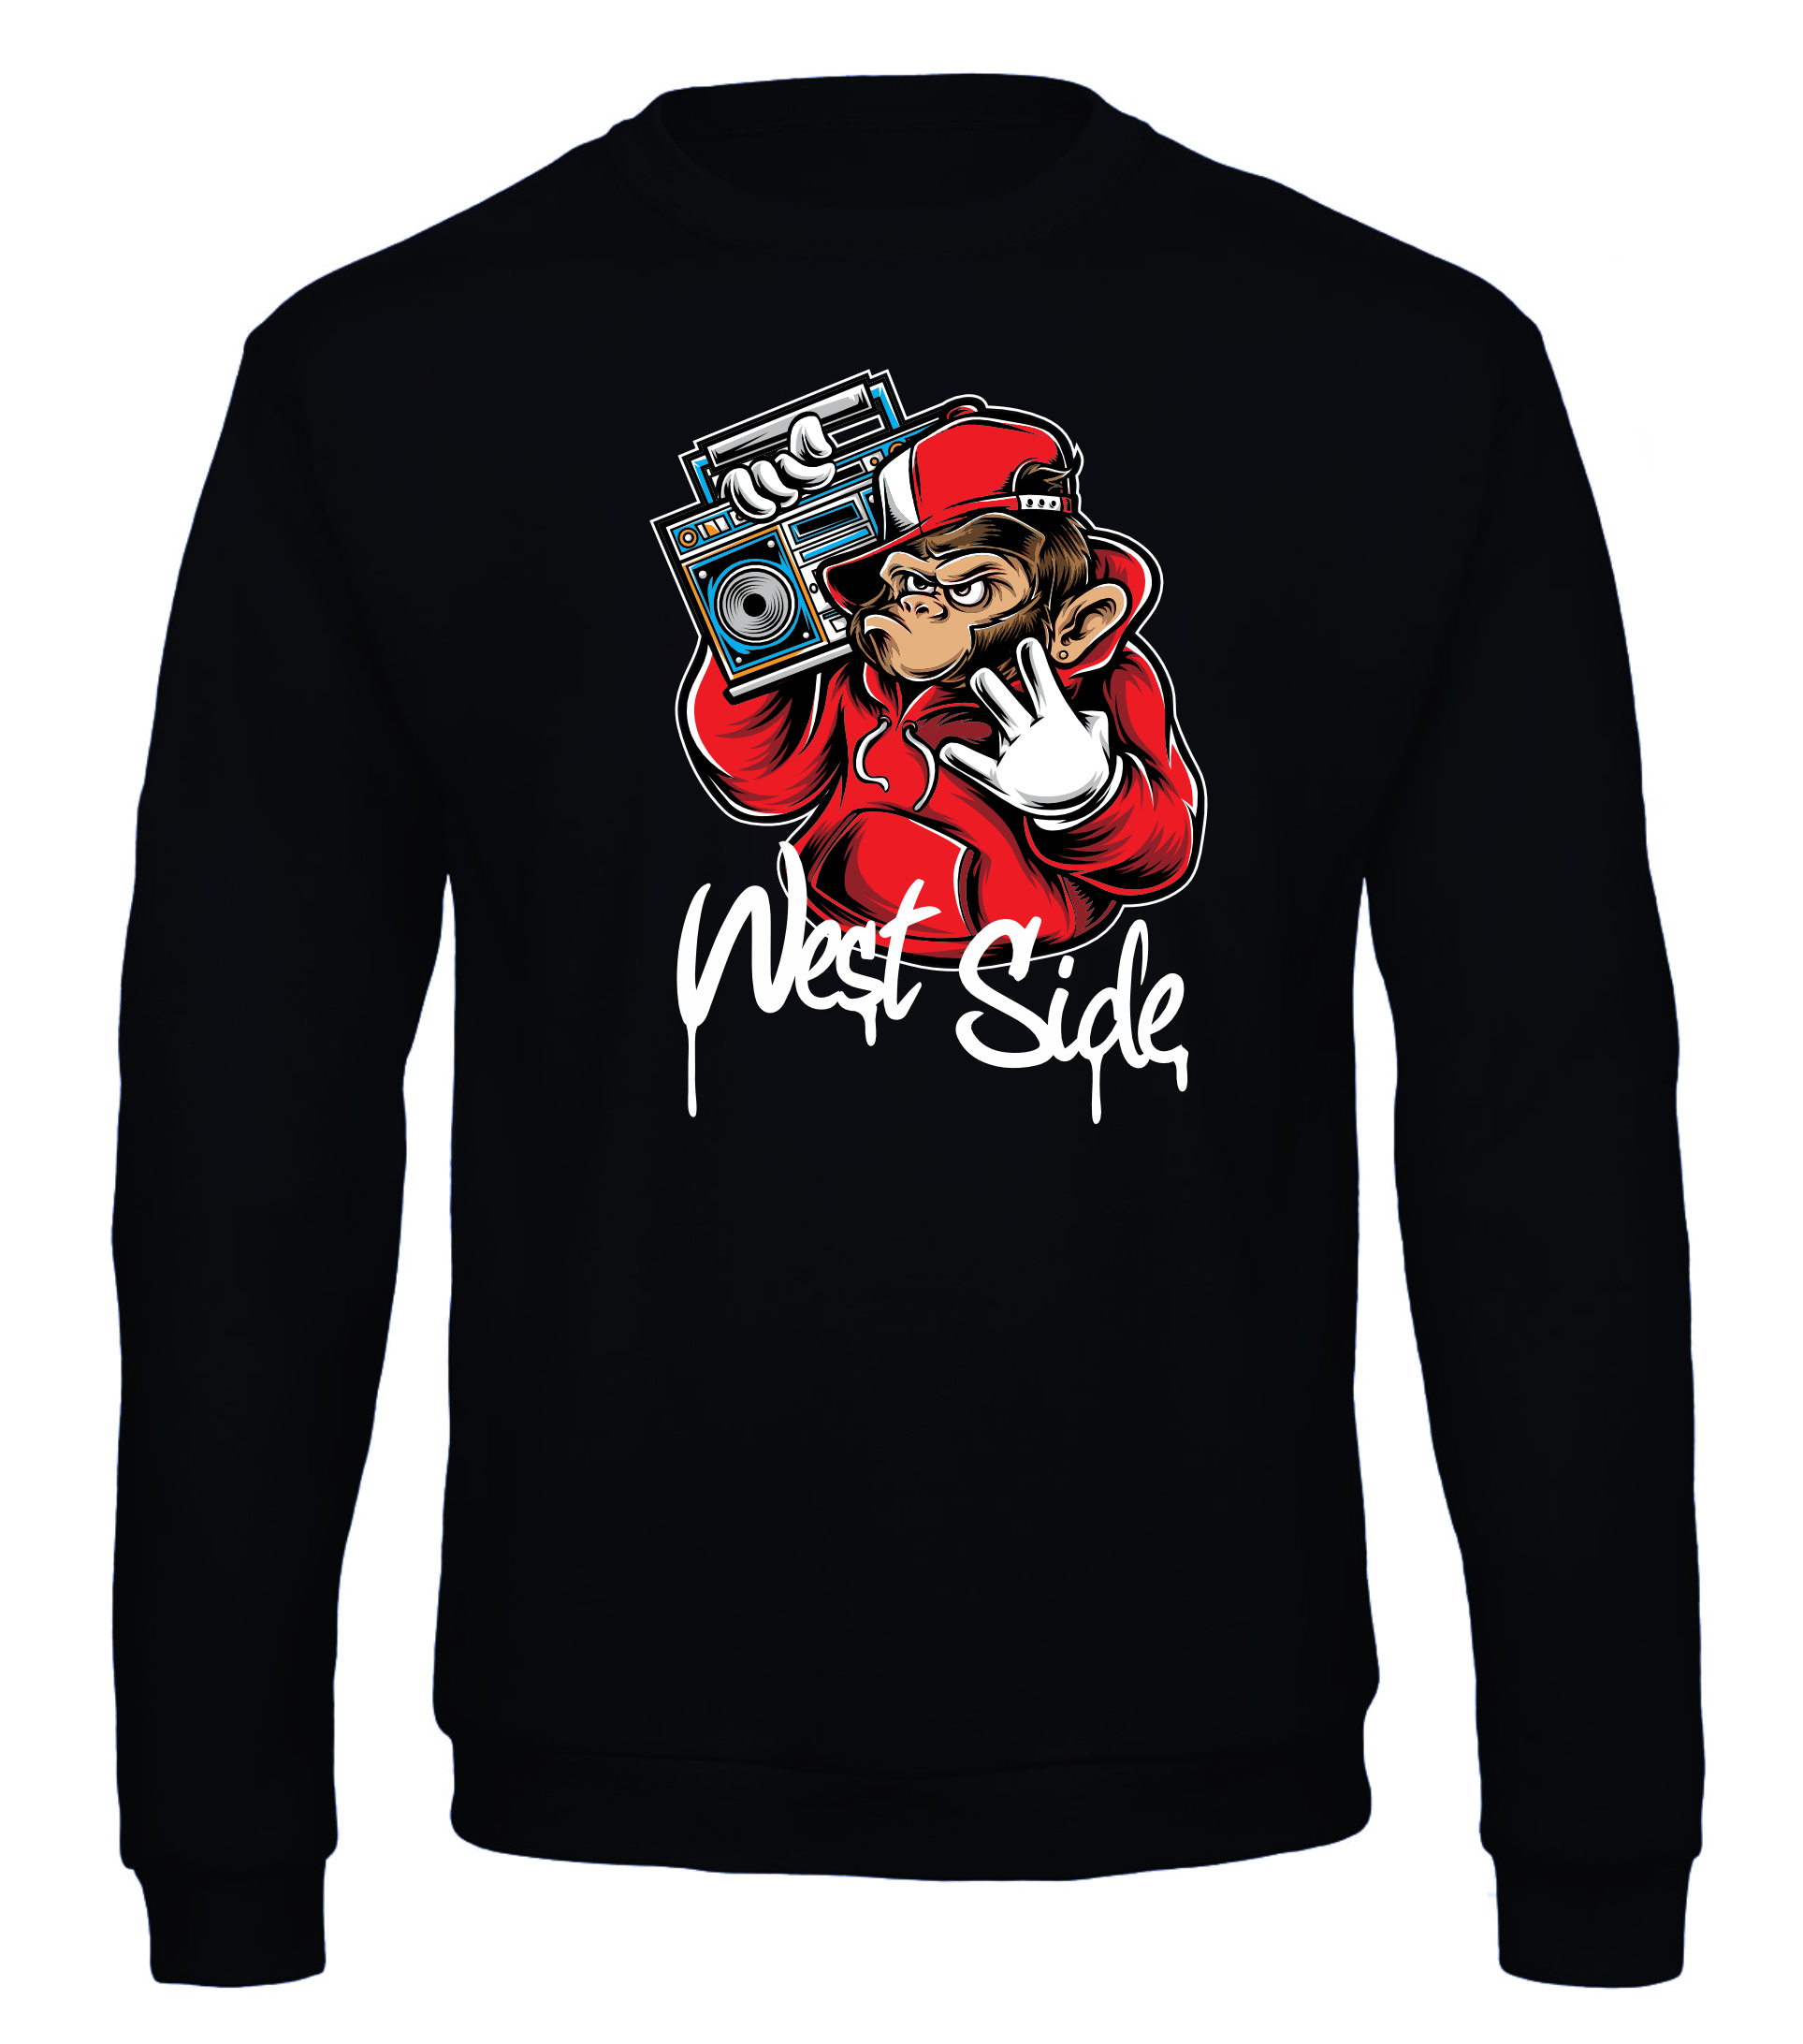 West Side Monkey - Sweater / S